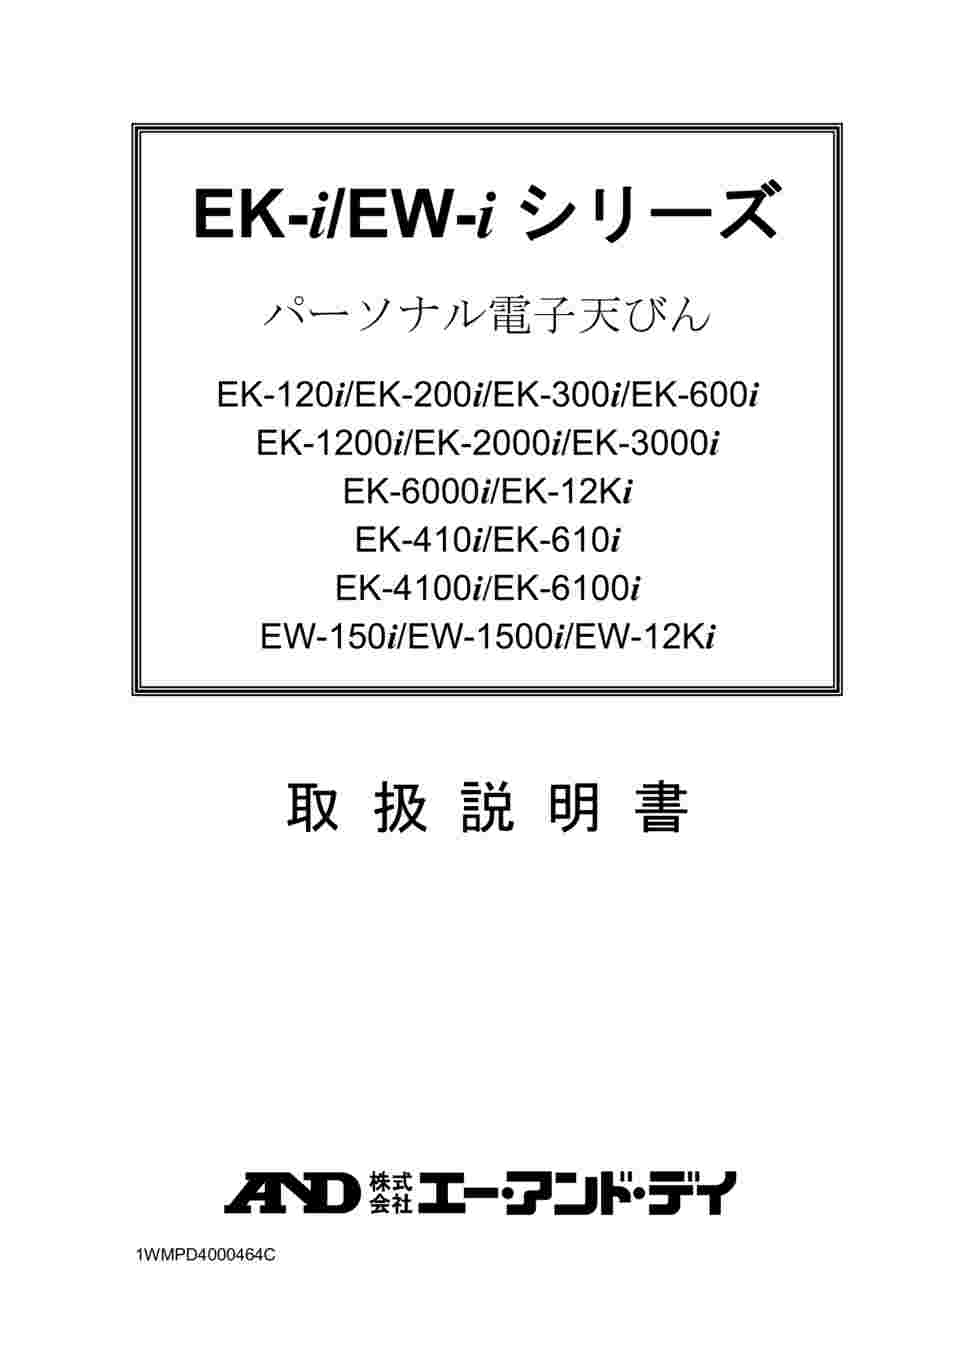 1-4465-05 コンパクト電子天びん EK-iシリーズ ひょう量:2000g 最小 